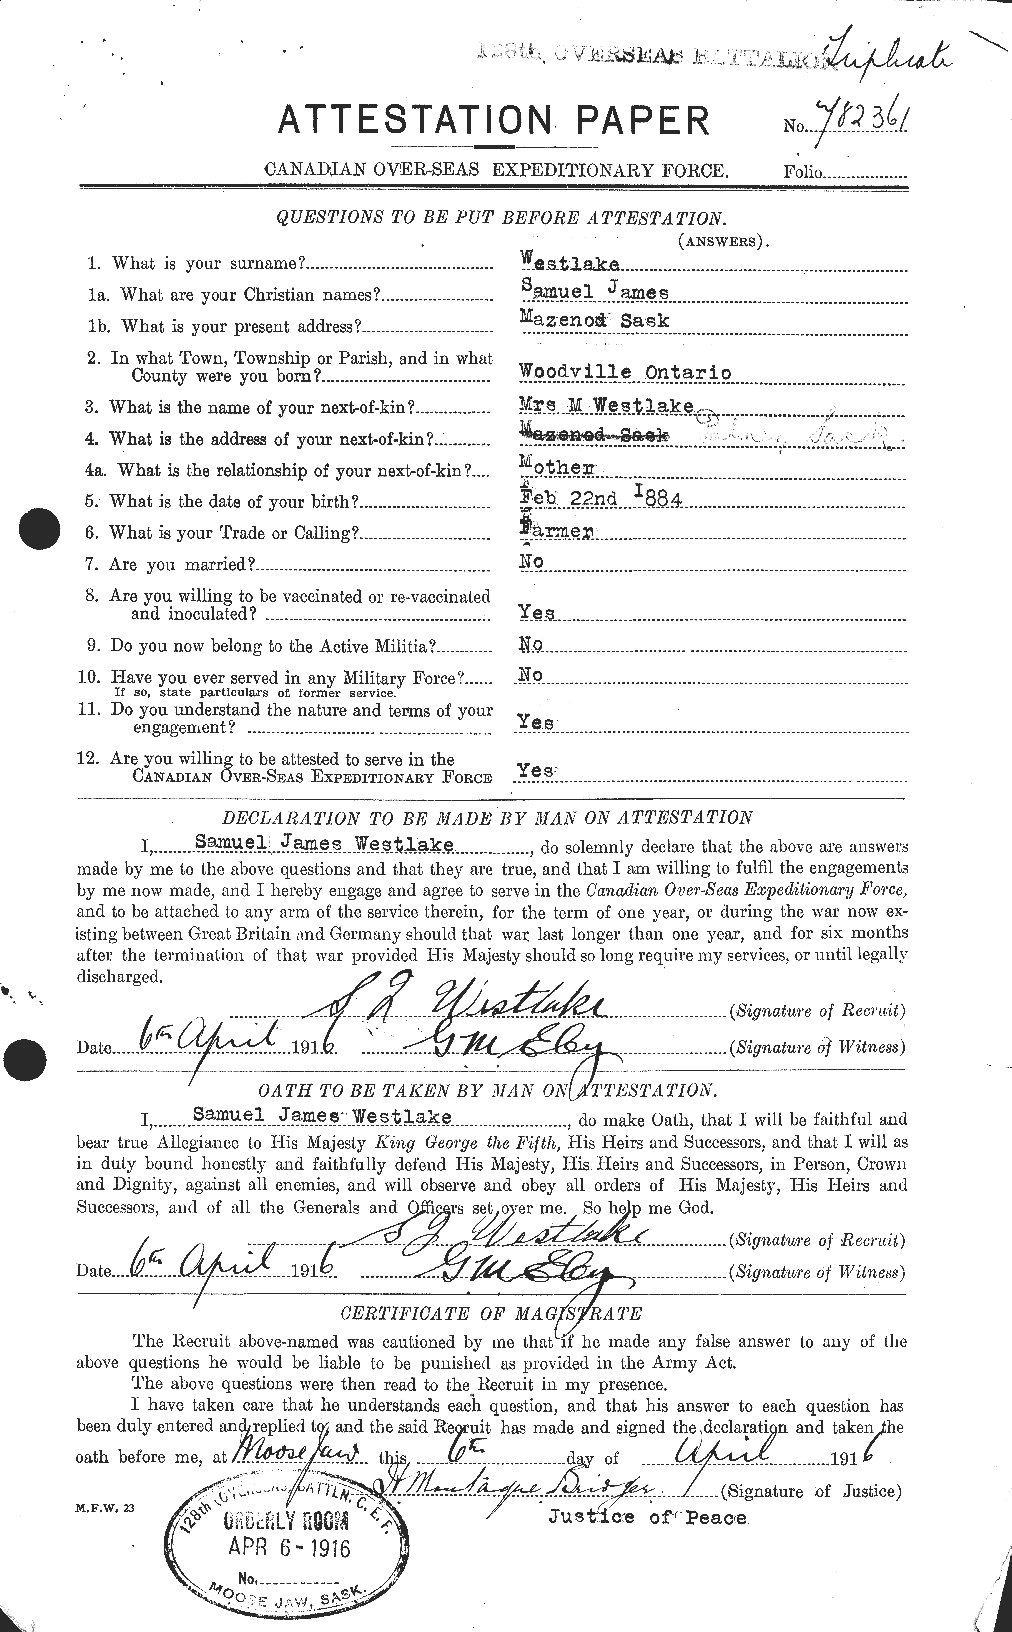 Dossiers du Personnel de la Première Guerre mondiale - CEC 665616a